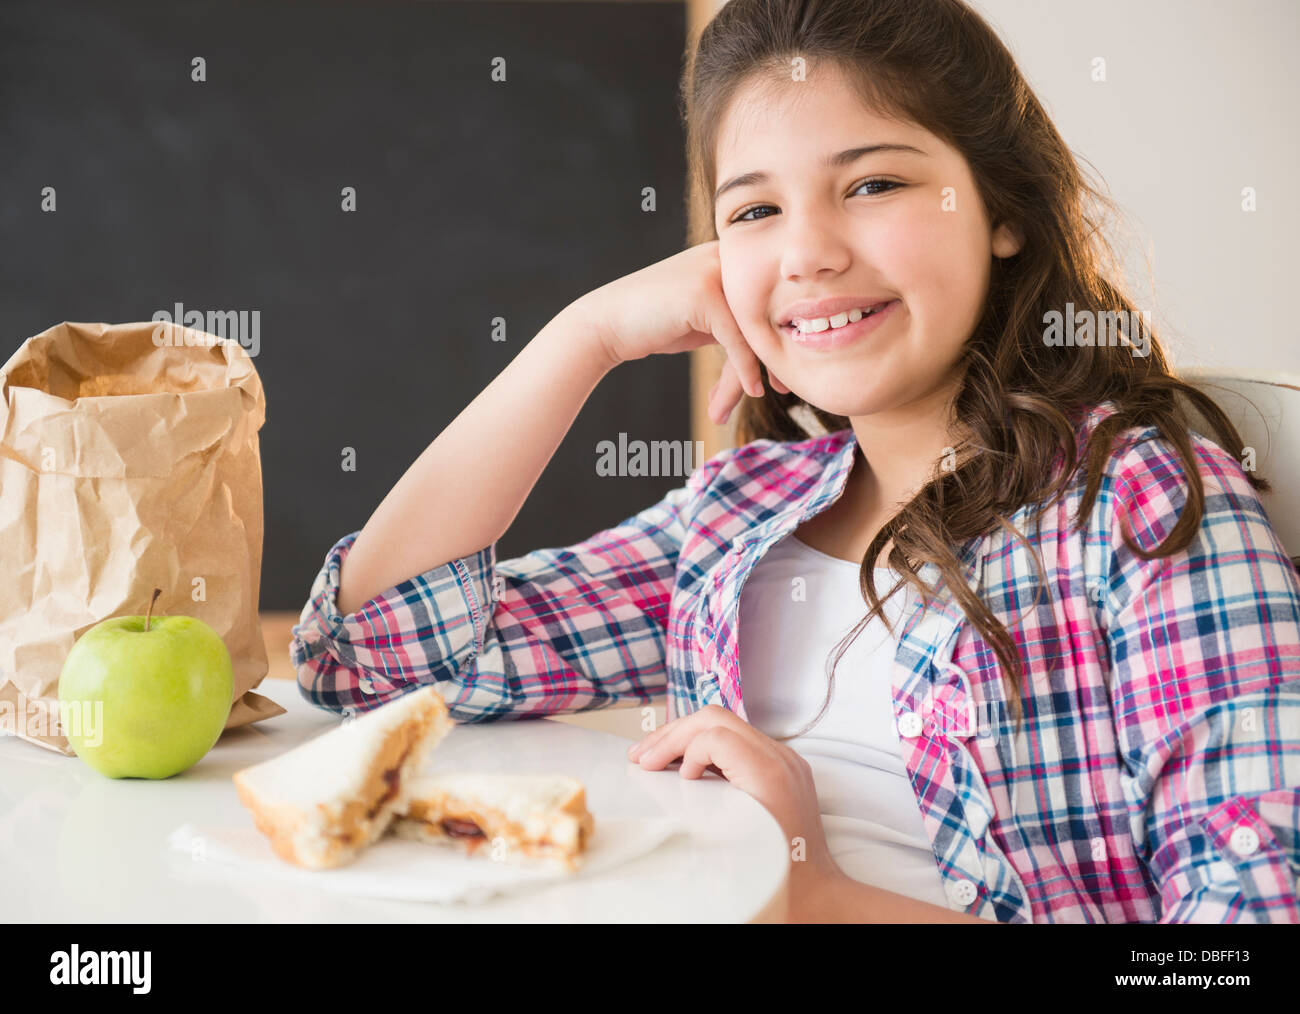 Hispanic girl eating lunch at desk Stock Photo